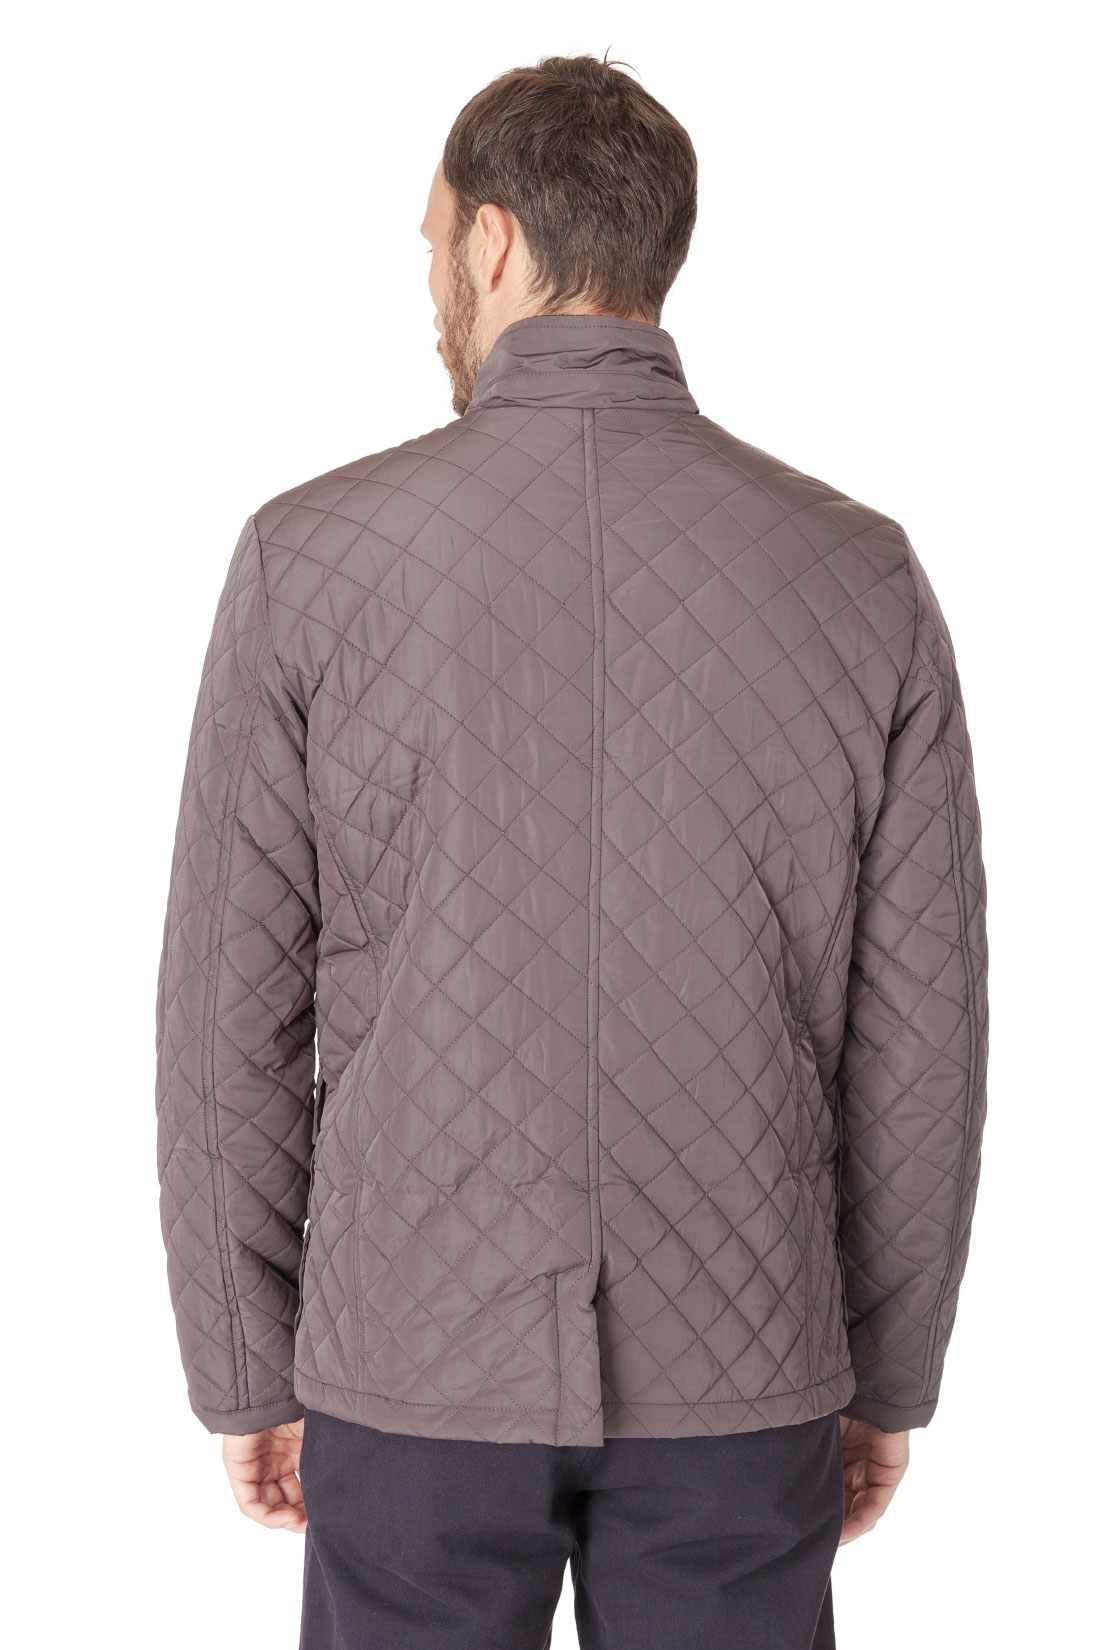 Классическая стёганая куртка (арт. baon B537023), размер L, цвет серый Классическая стёганая куртка (арт. baon B537023) - фото 2